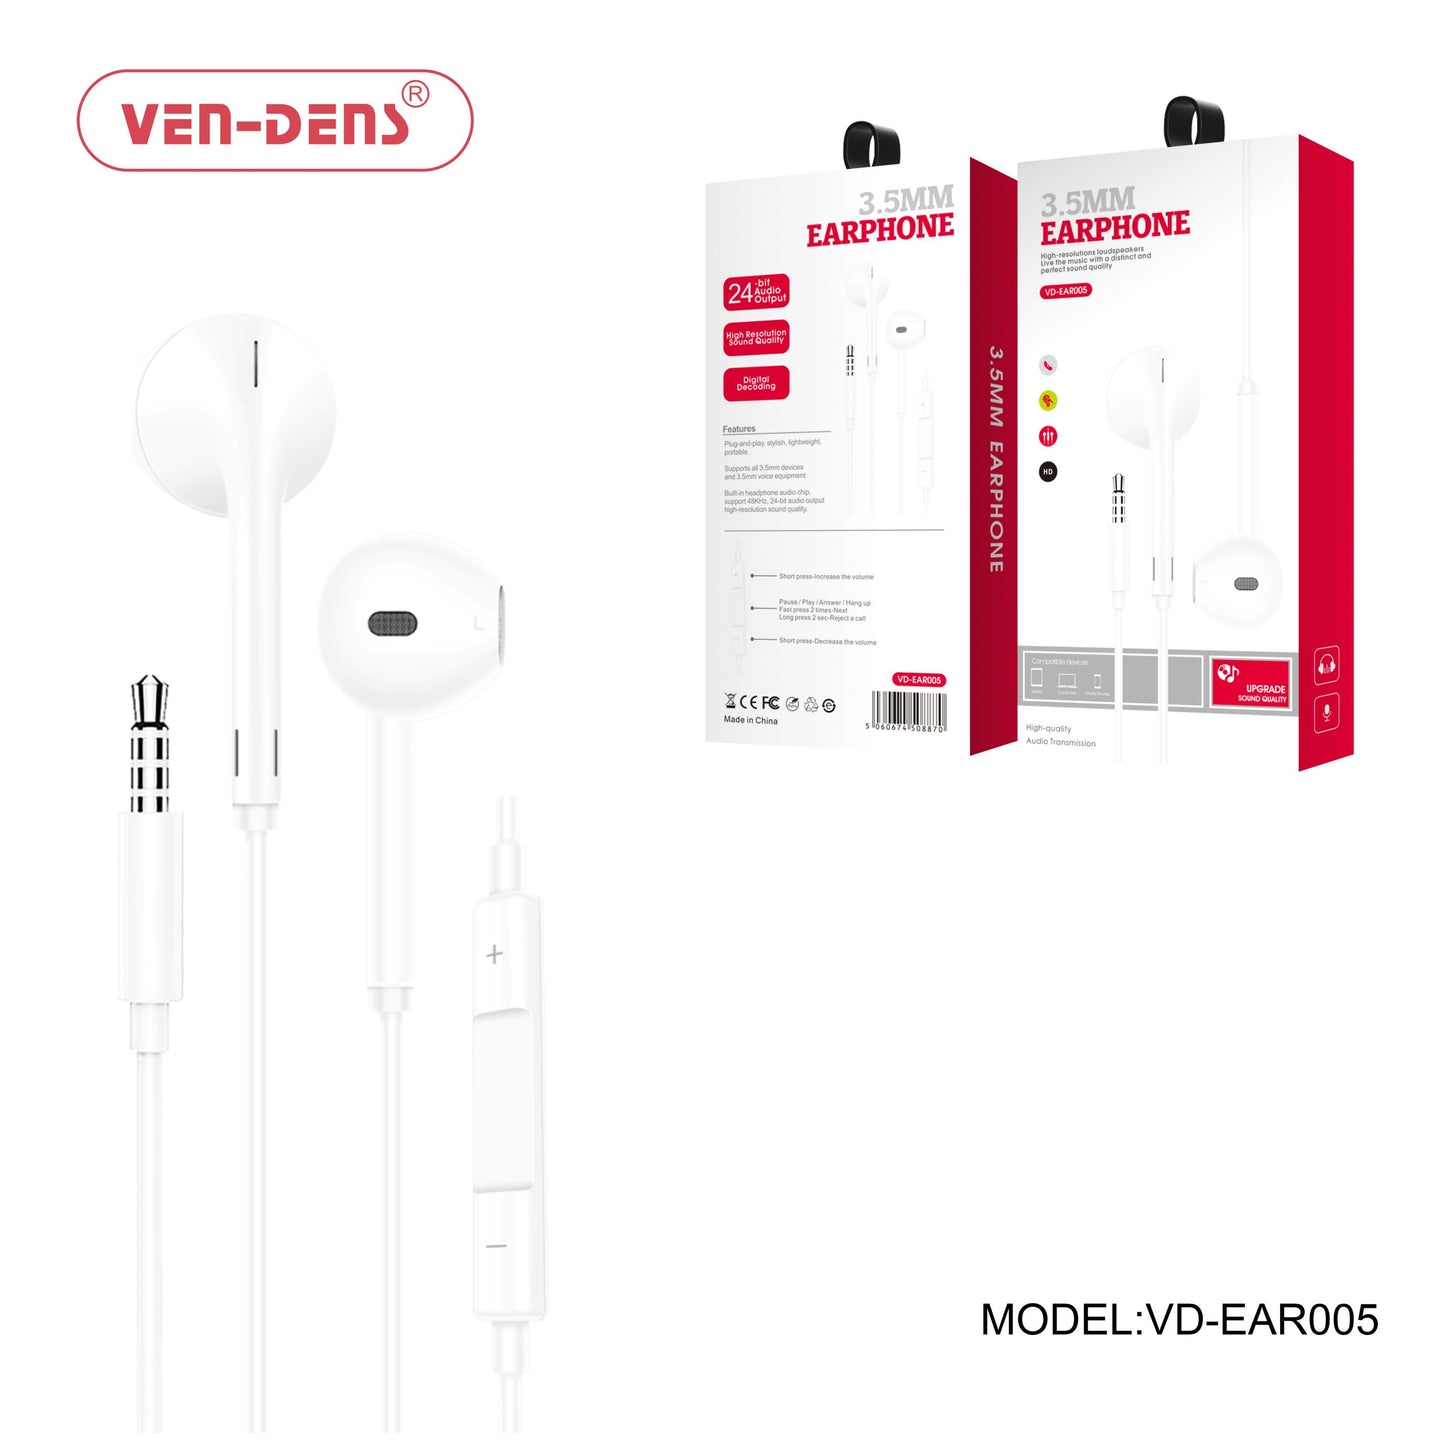 VEN-DENS VD-EAR005 3.5MM Earphone